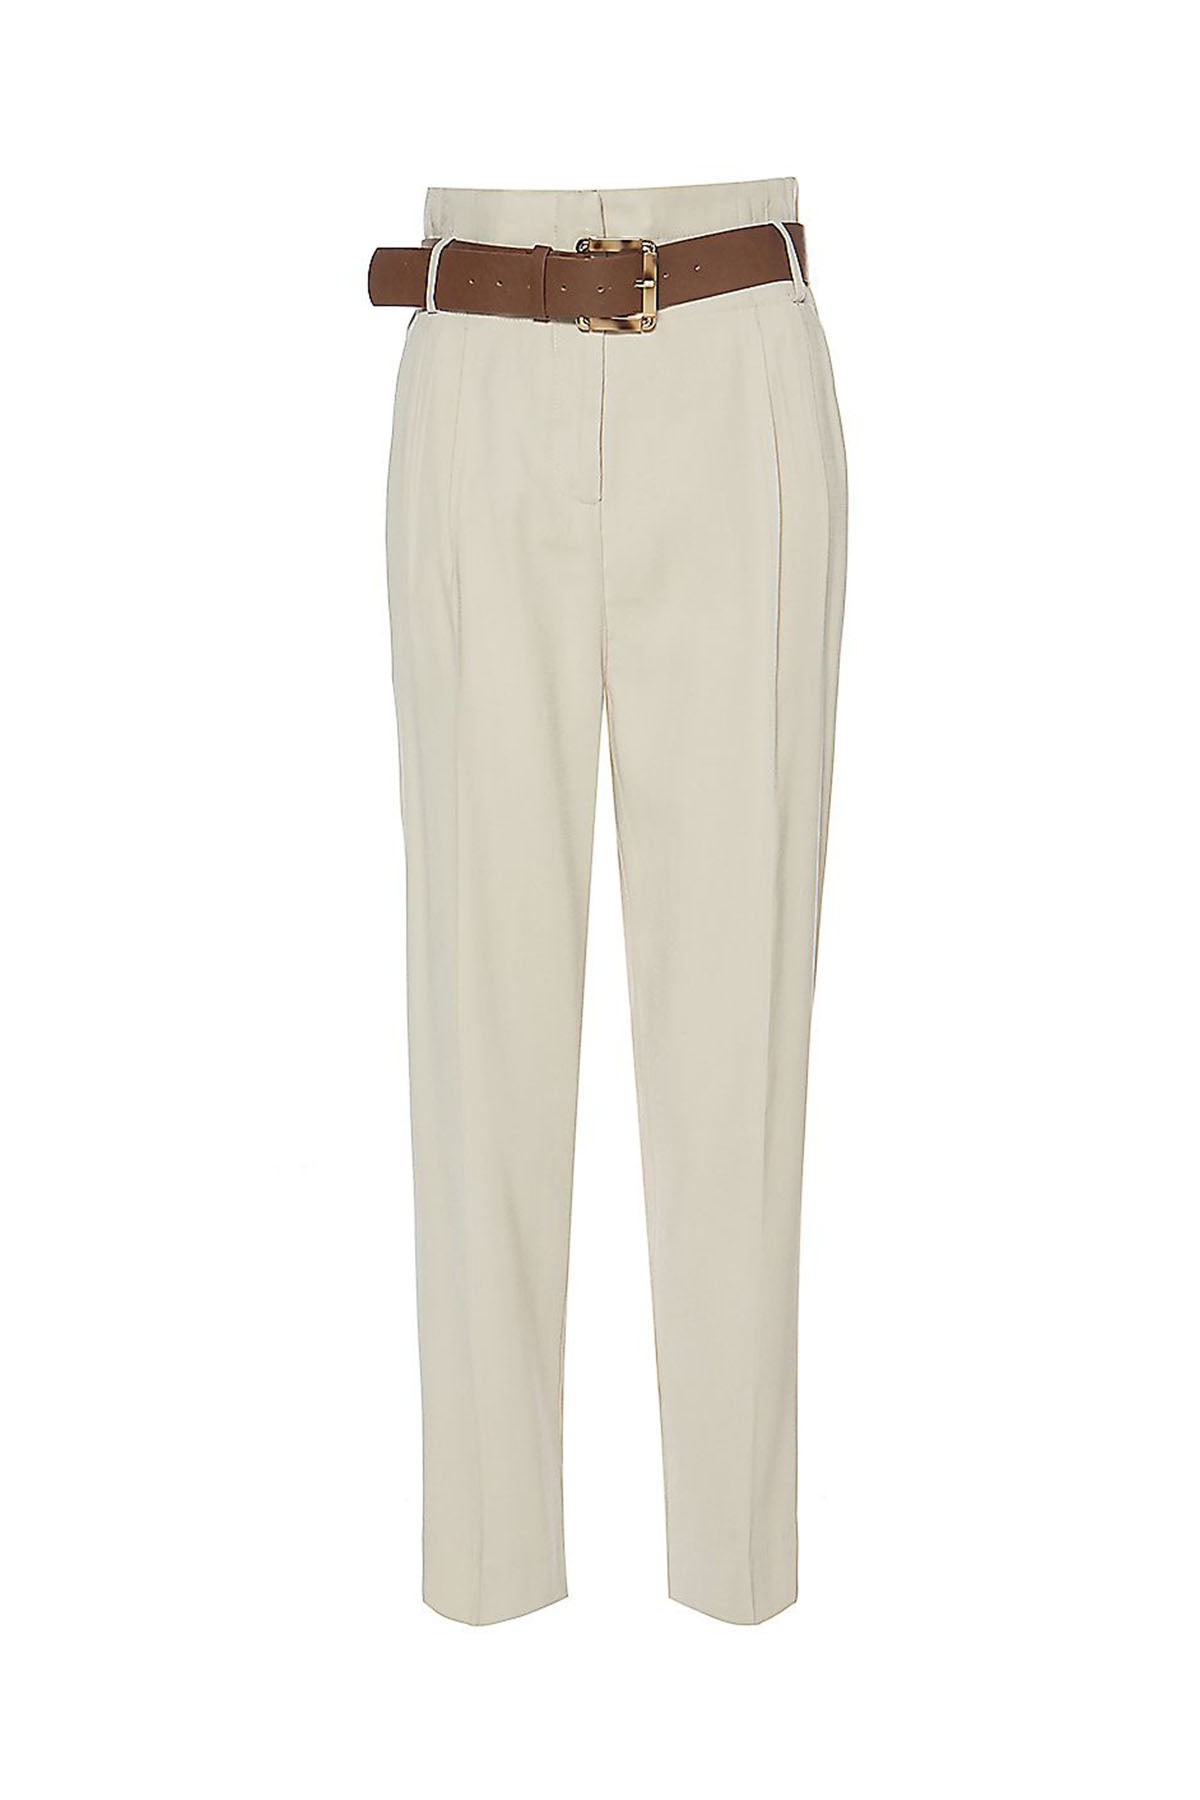 Bsb Pileli Yüksek Bel Paperbag Pantolon-Libas Trendy Fashion Store